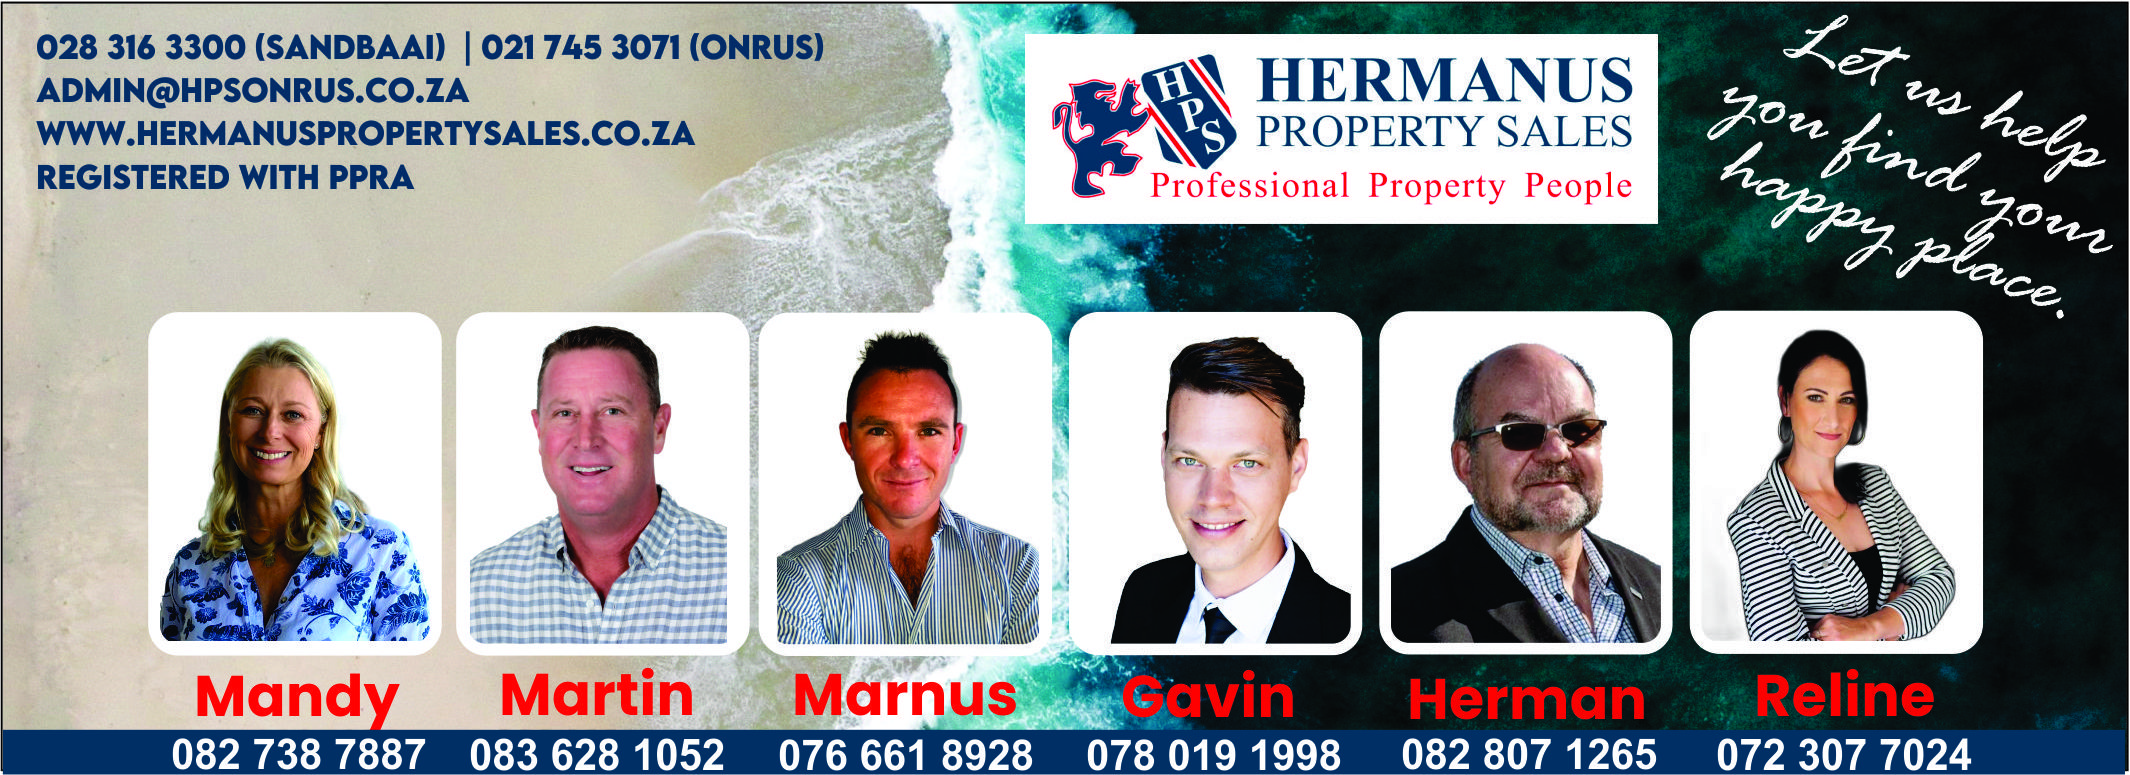 hermanus property sales